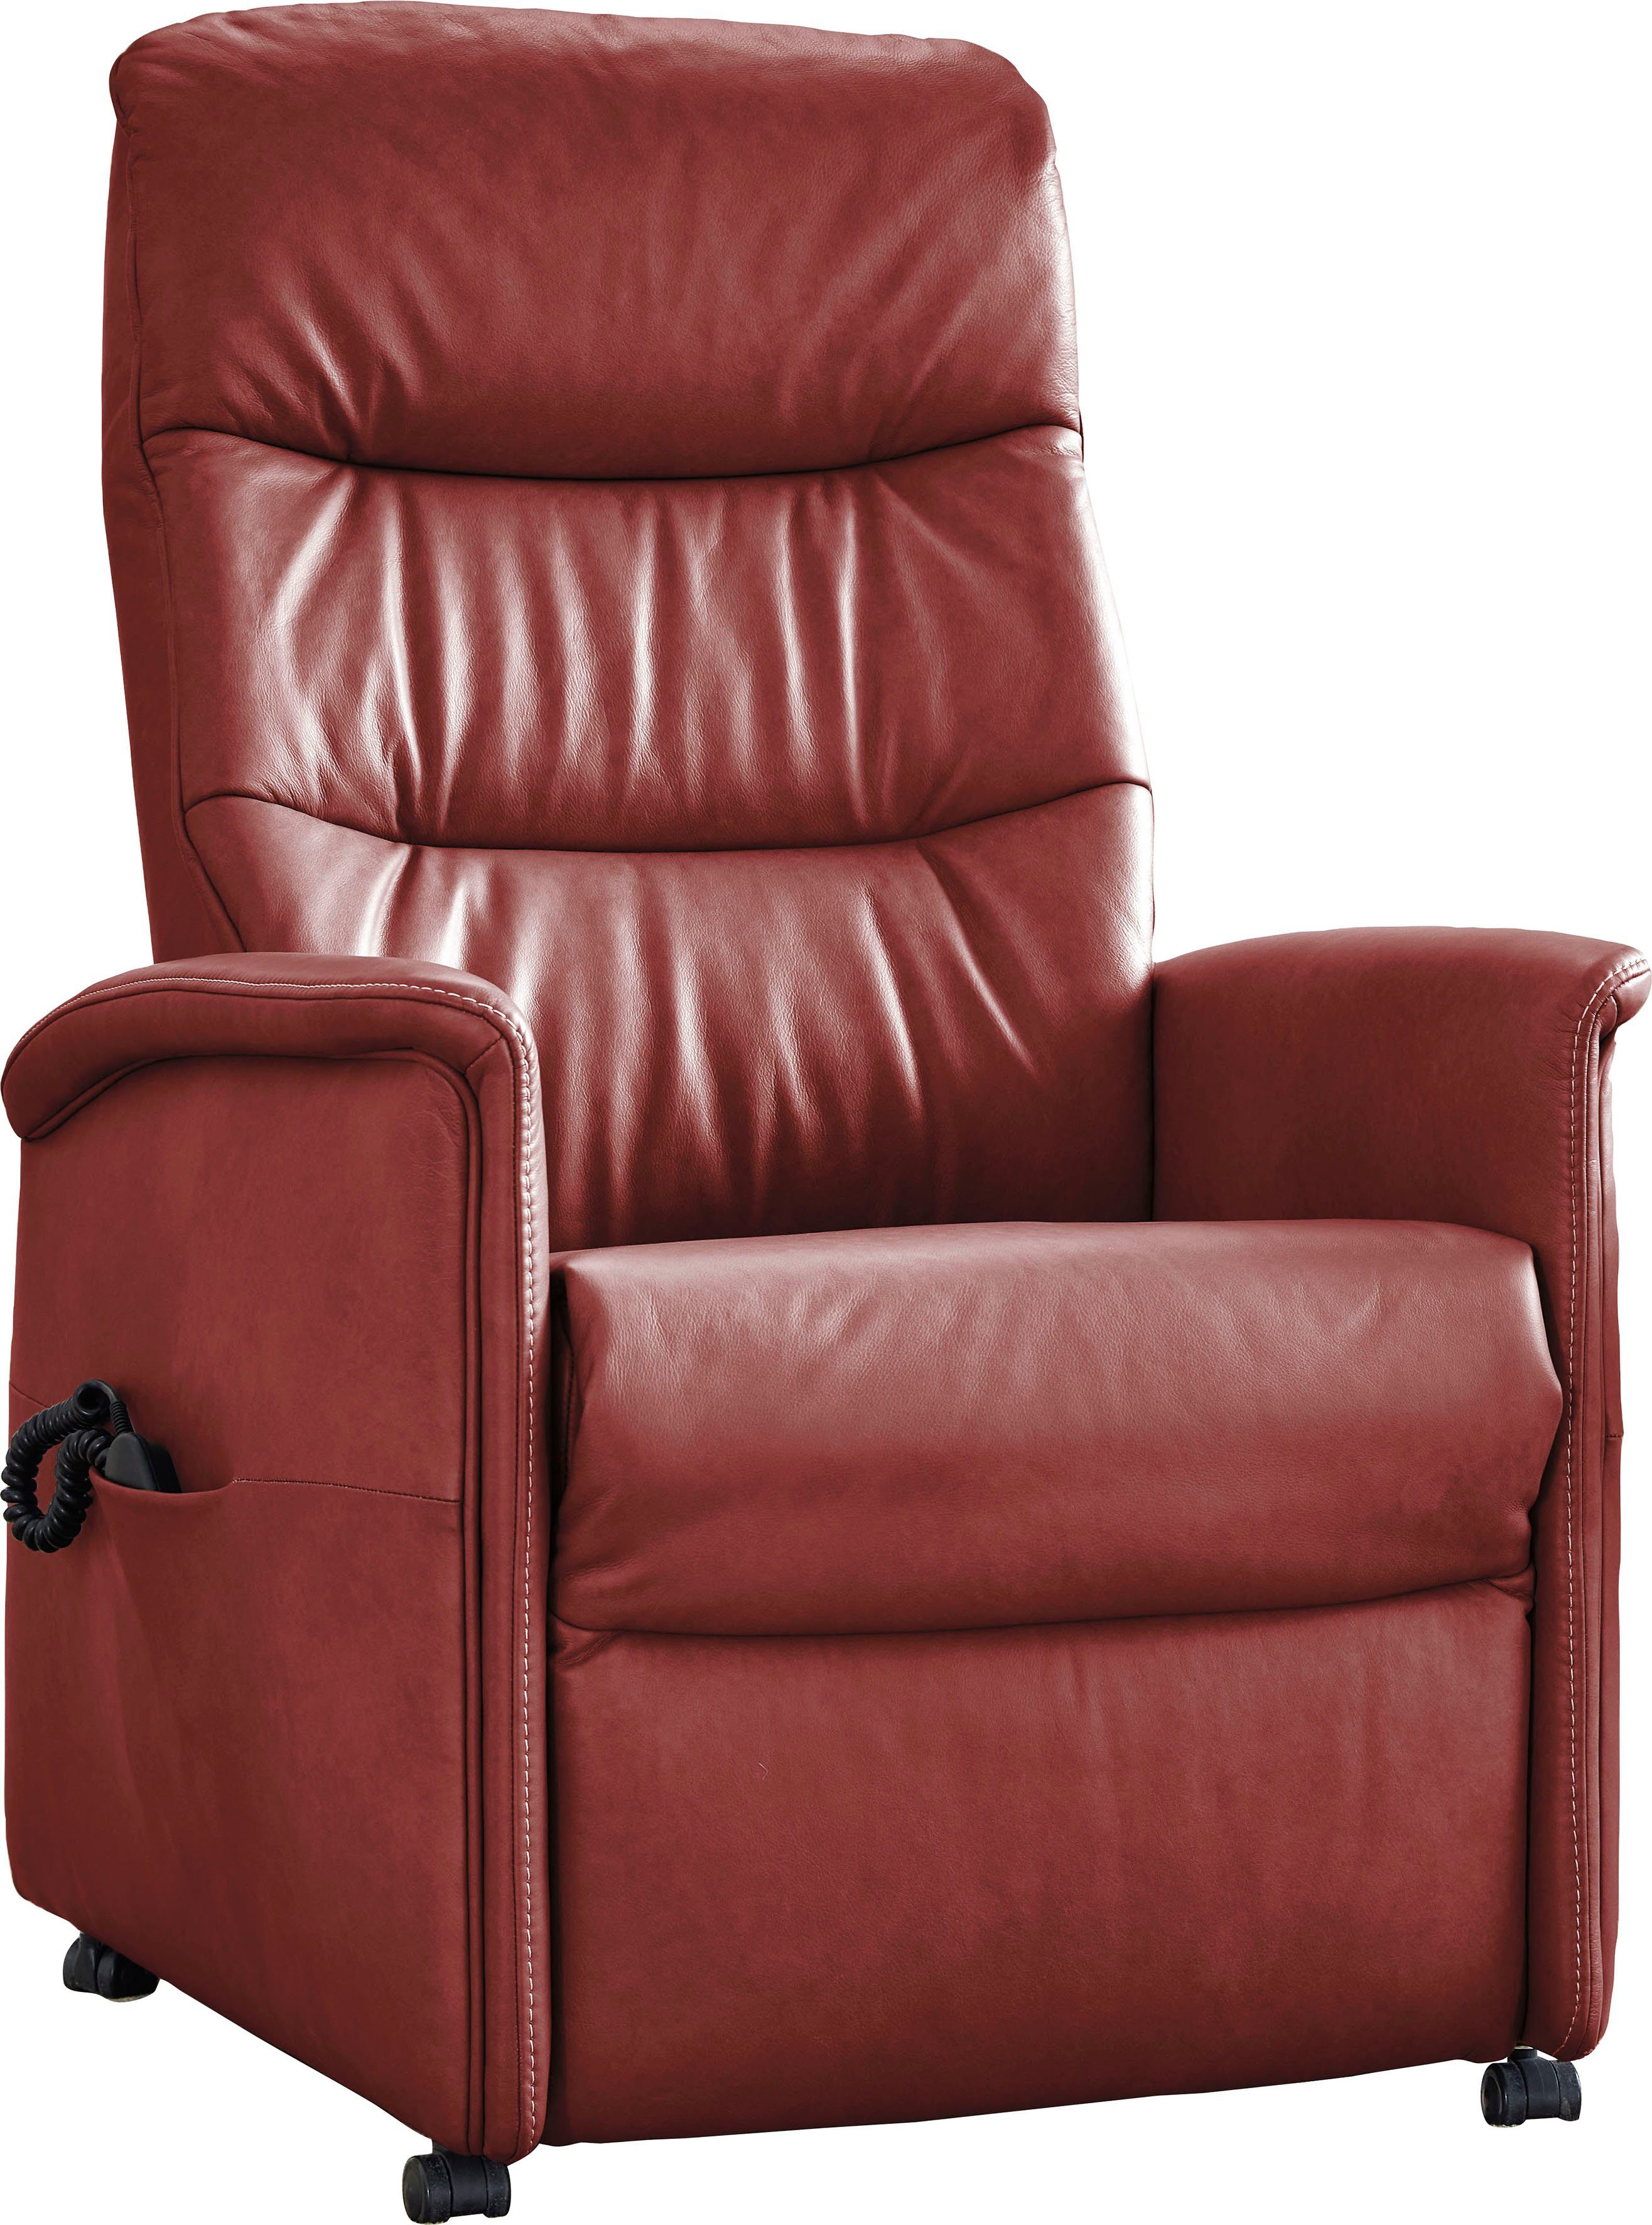 Relaxsessel 9051, in verstellbar, 3 himolla Aufstehhilfe manuell Sitzhöhen, himolla elektrisch oder